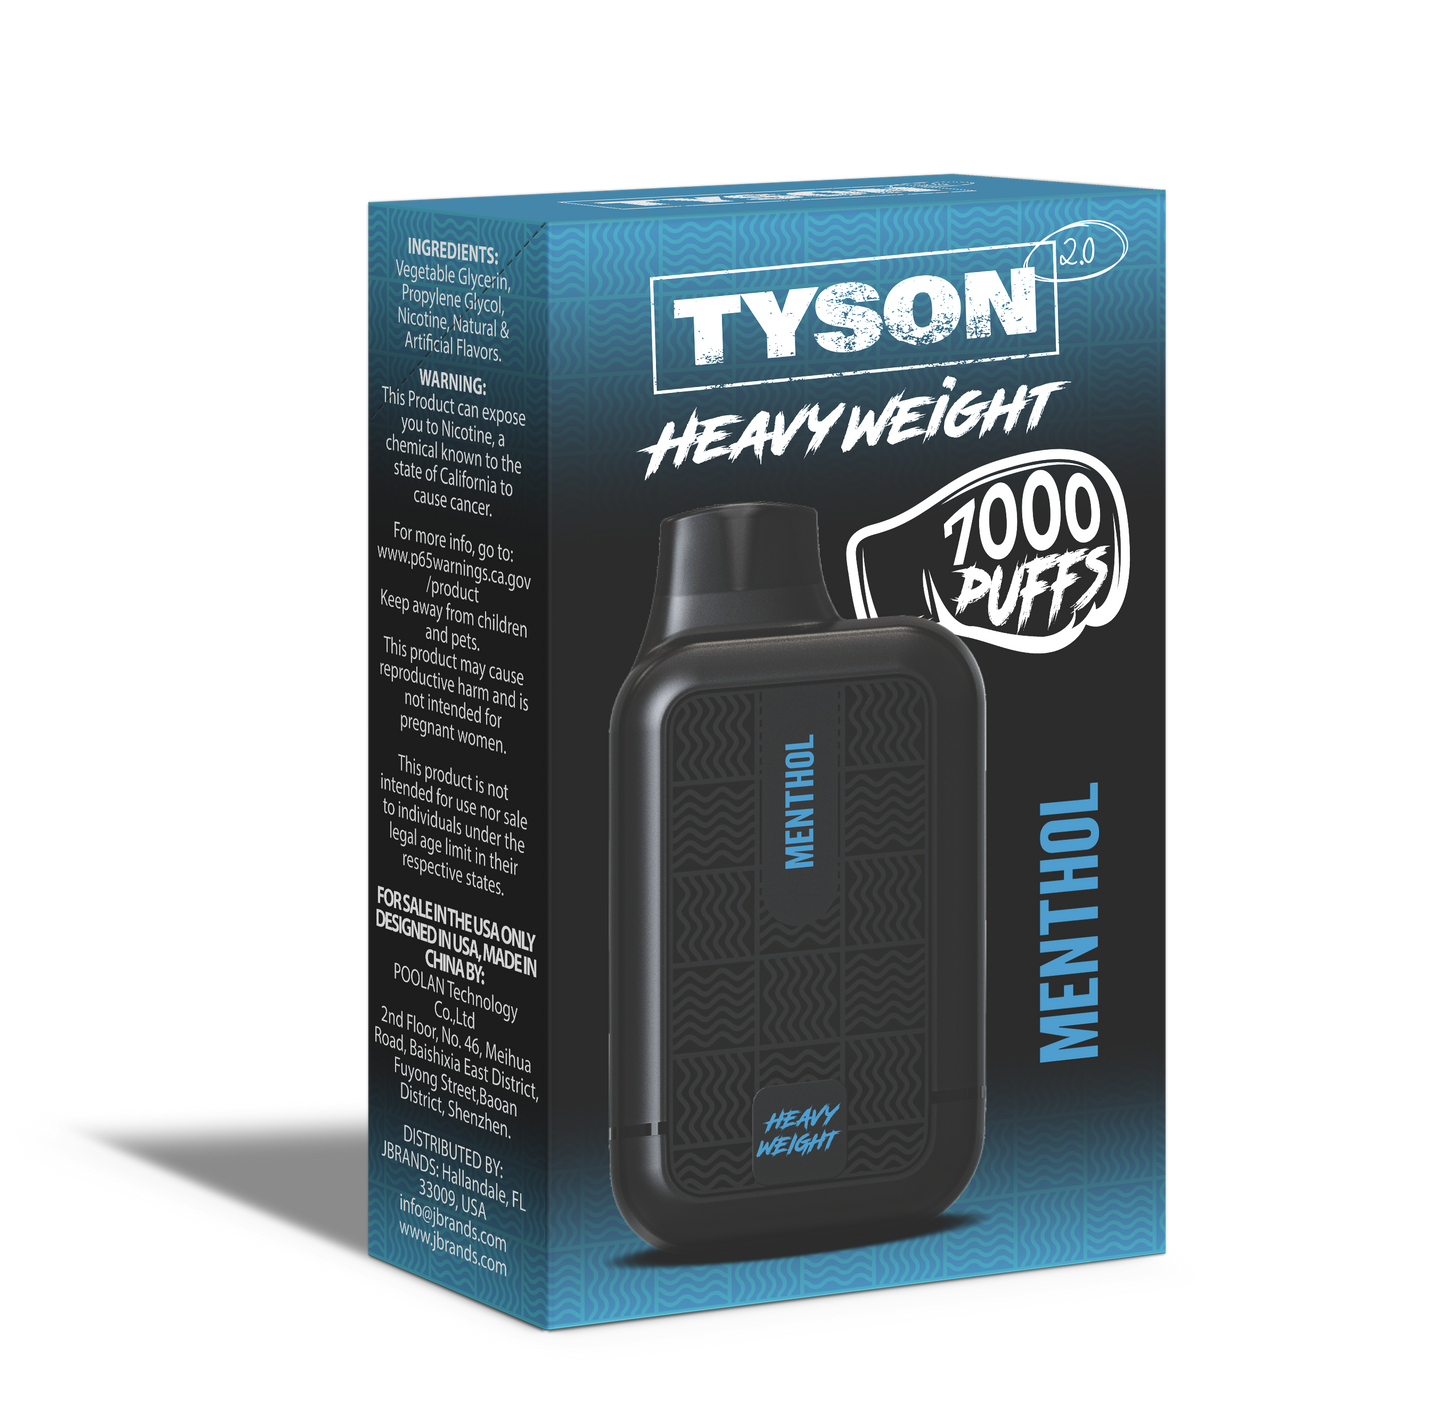 Tyson 2.0 Heavyweight 7000 Puffs Disposable Vape - Menthol